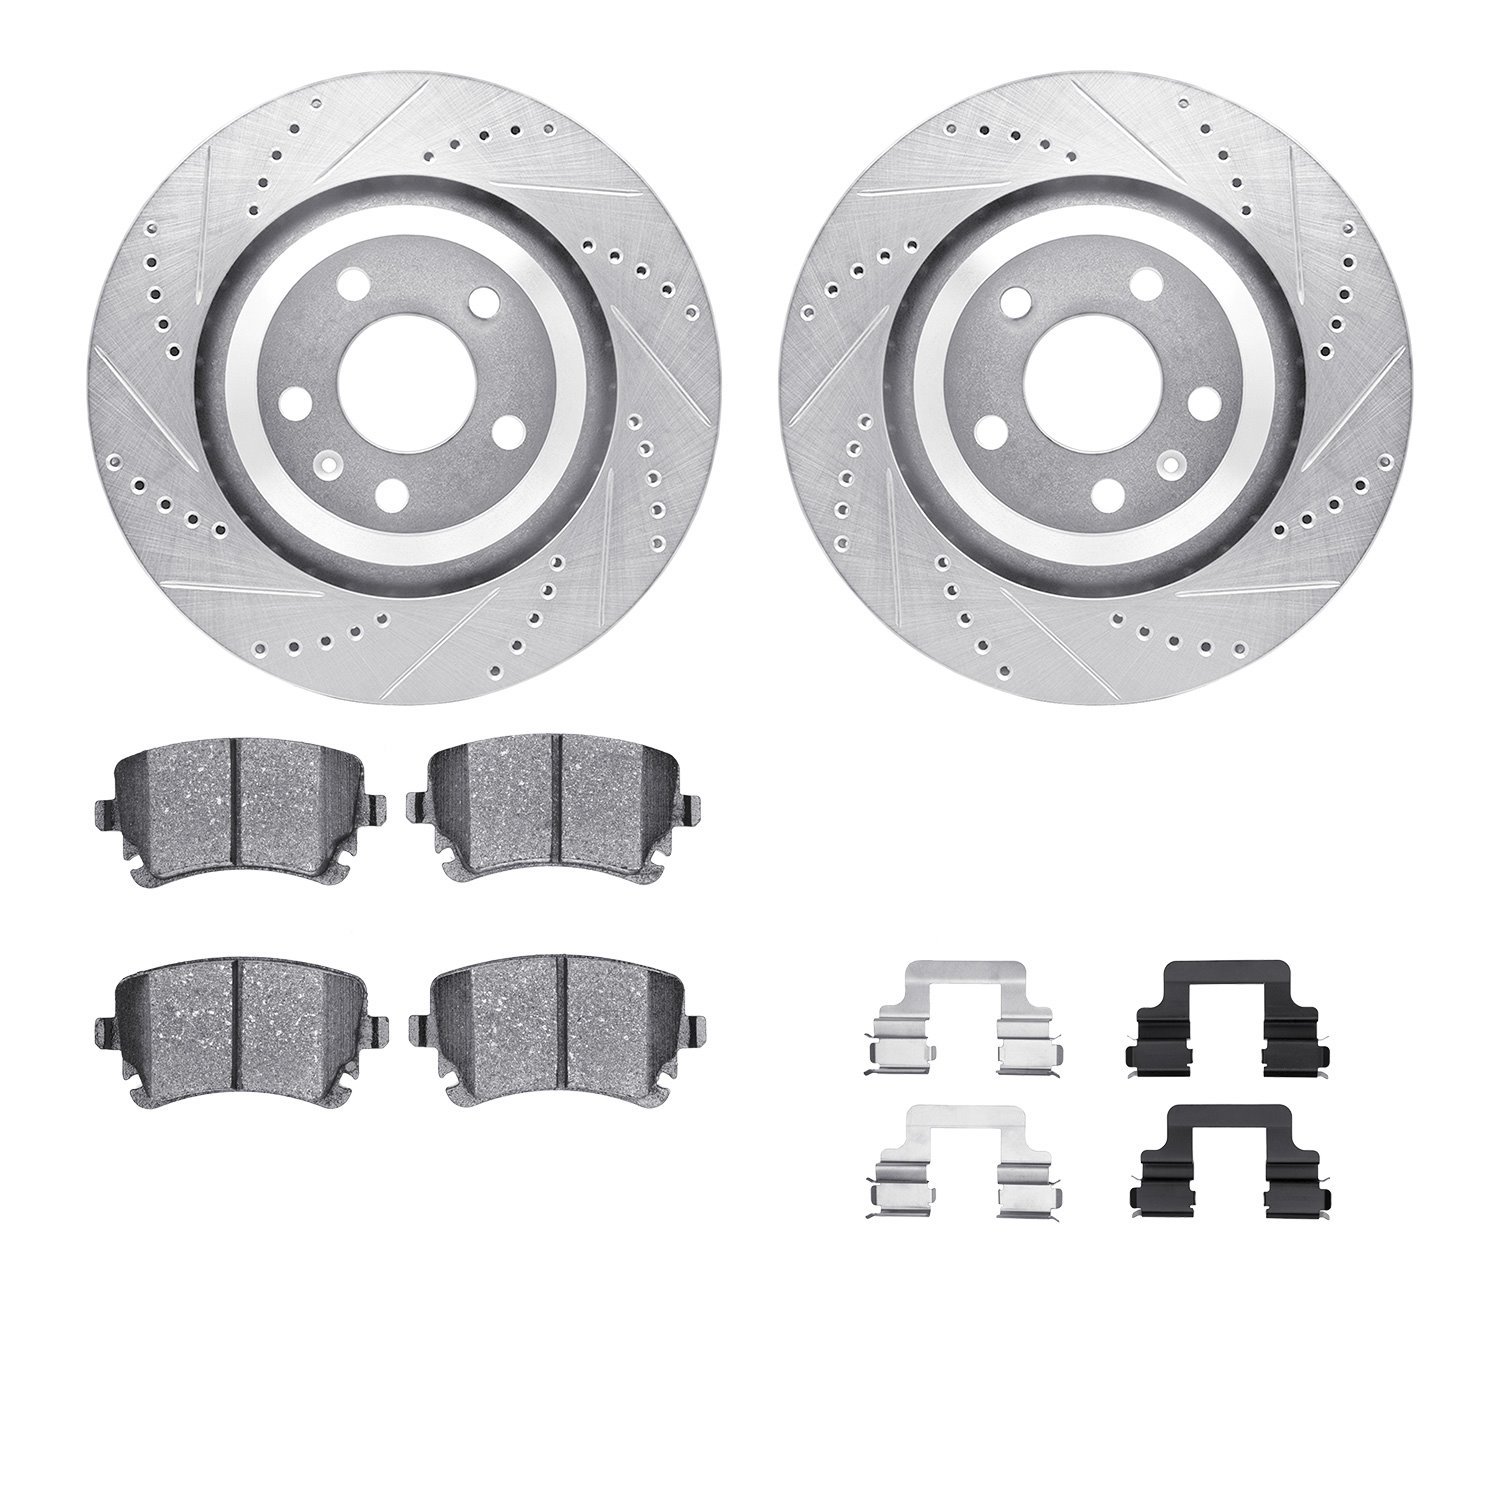 7612-73036 Drilled/Slotted Brake Rotors w/5000 Euro Ceramic Brake Pads Kit & Hardware [Silver], 2005-2011 Audi/Volkswagen, Posit